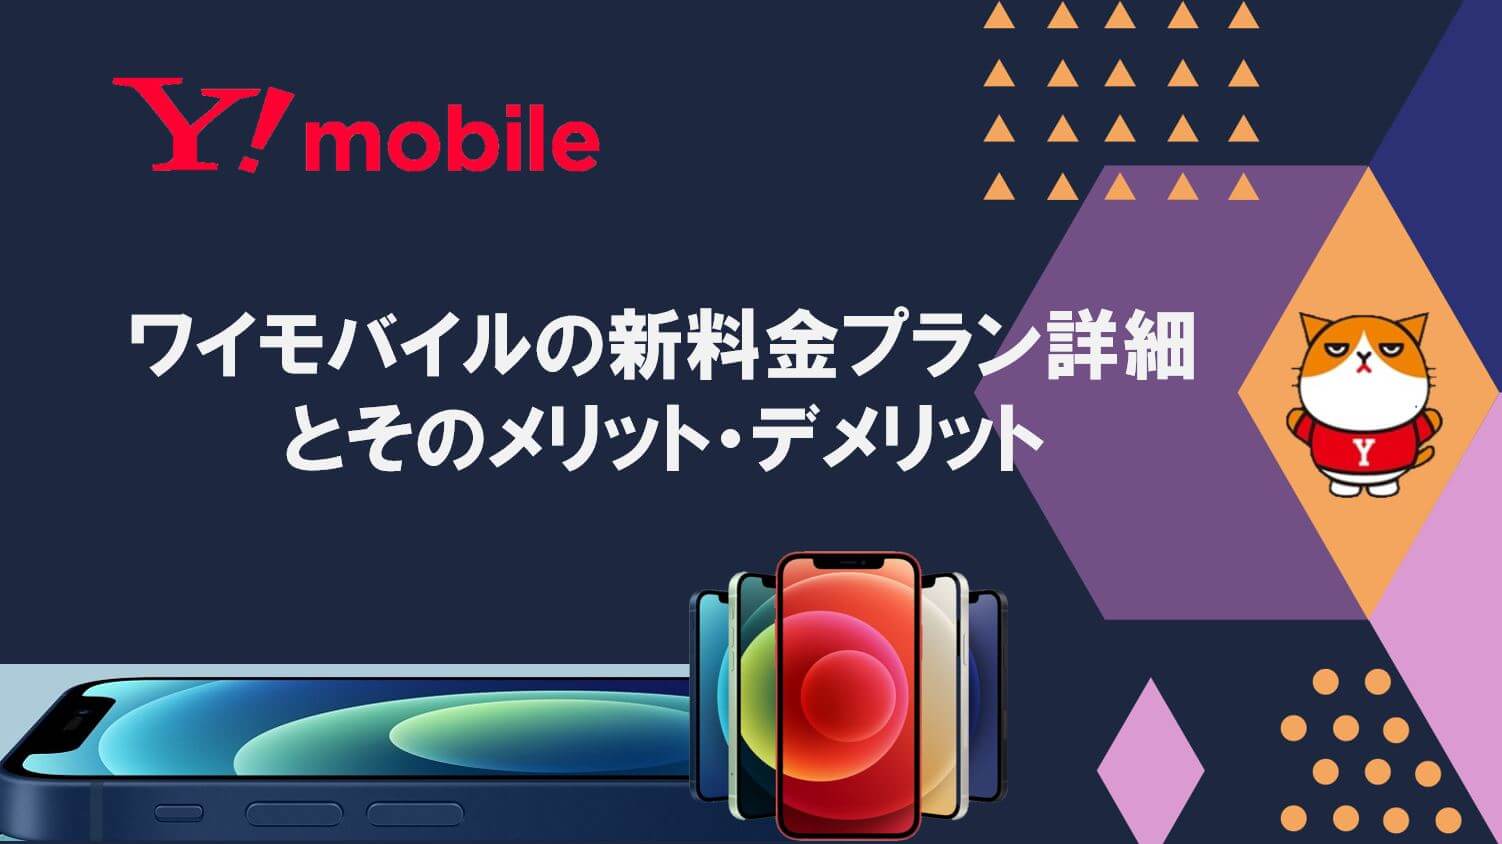 プラン y モバイル Y!mobile（ワイモバイル）の「シンプルS／M／L」プランを5つのポイントで解説【2021年3月版】